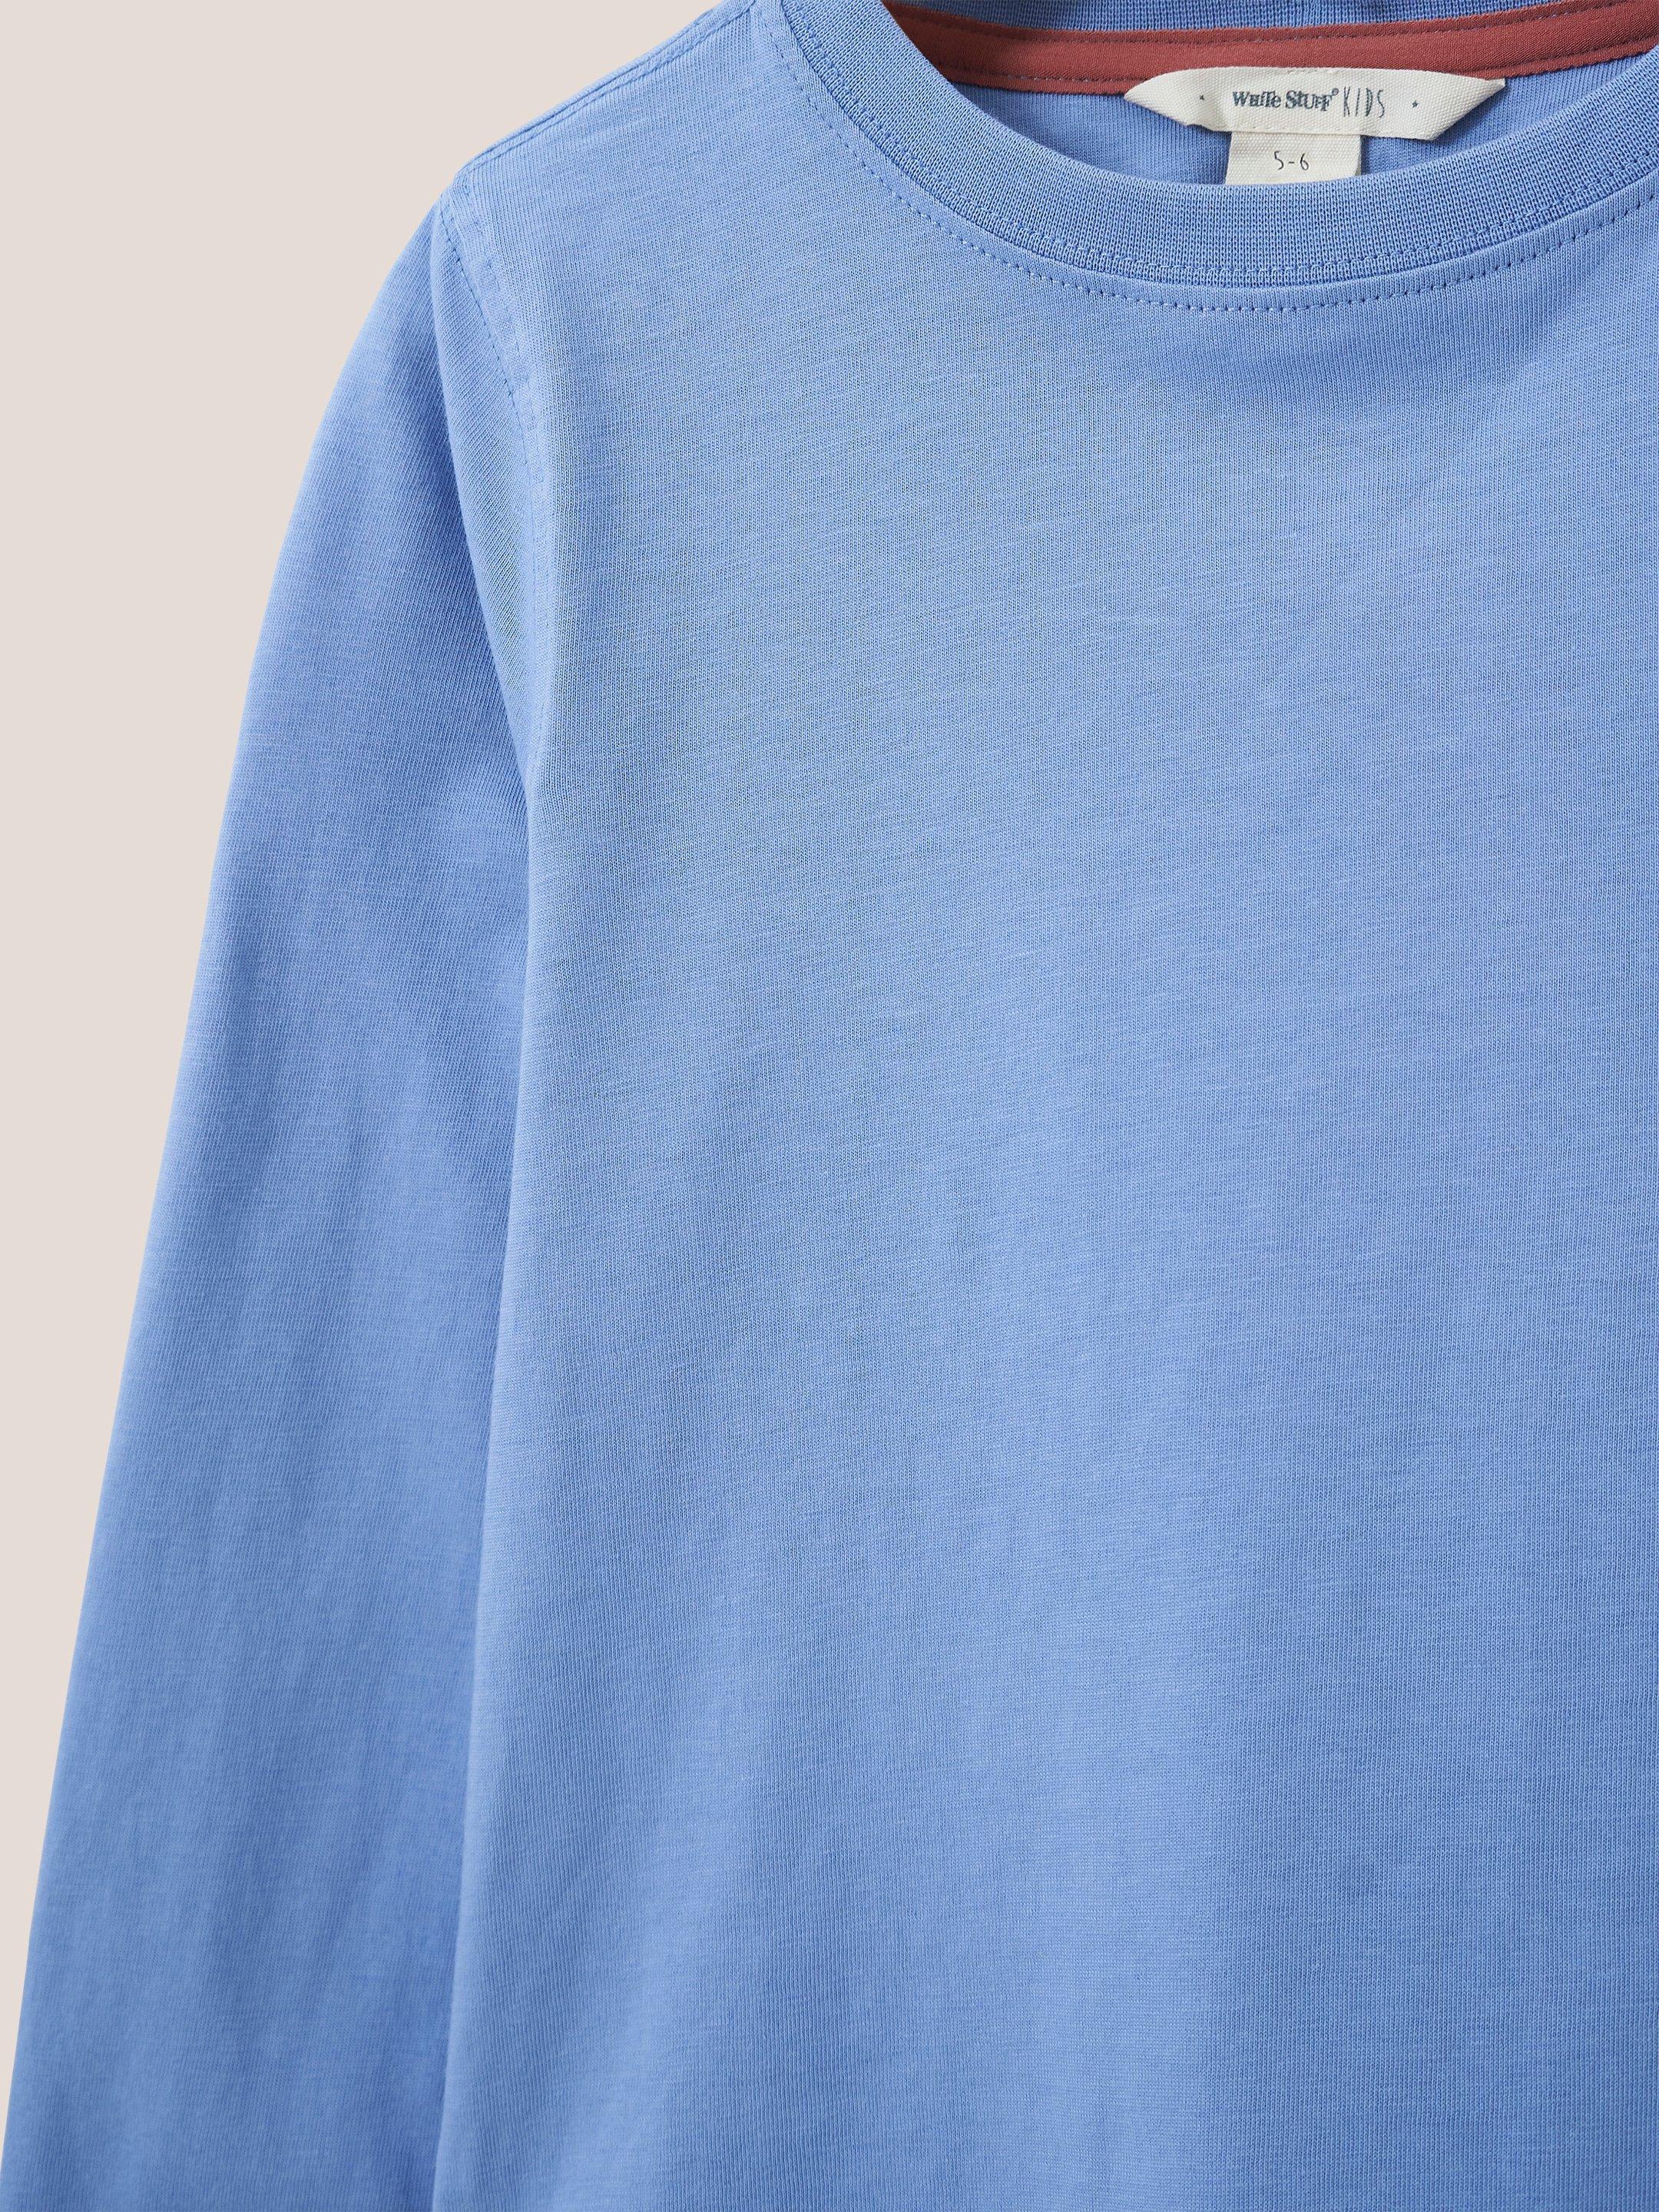 Long Sleeve Abersoch T Shirt in LGT BLUE - FLAT DETAIL